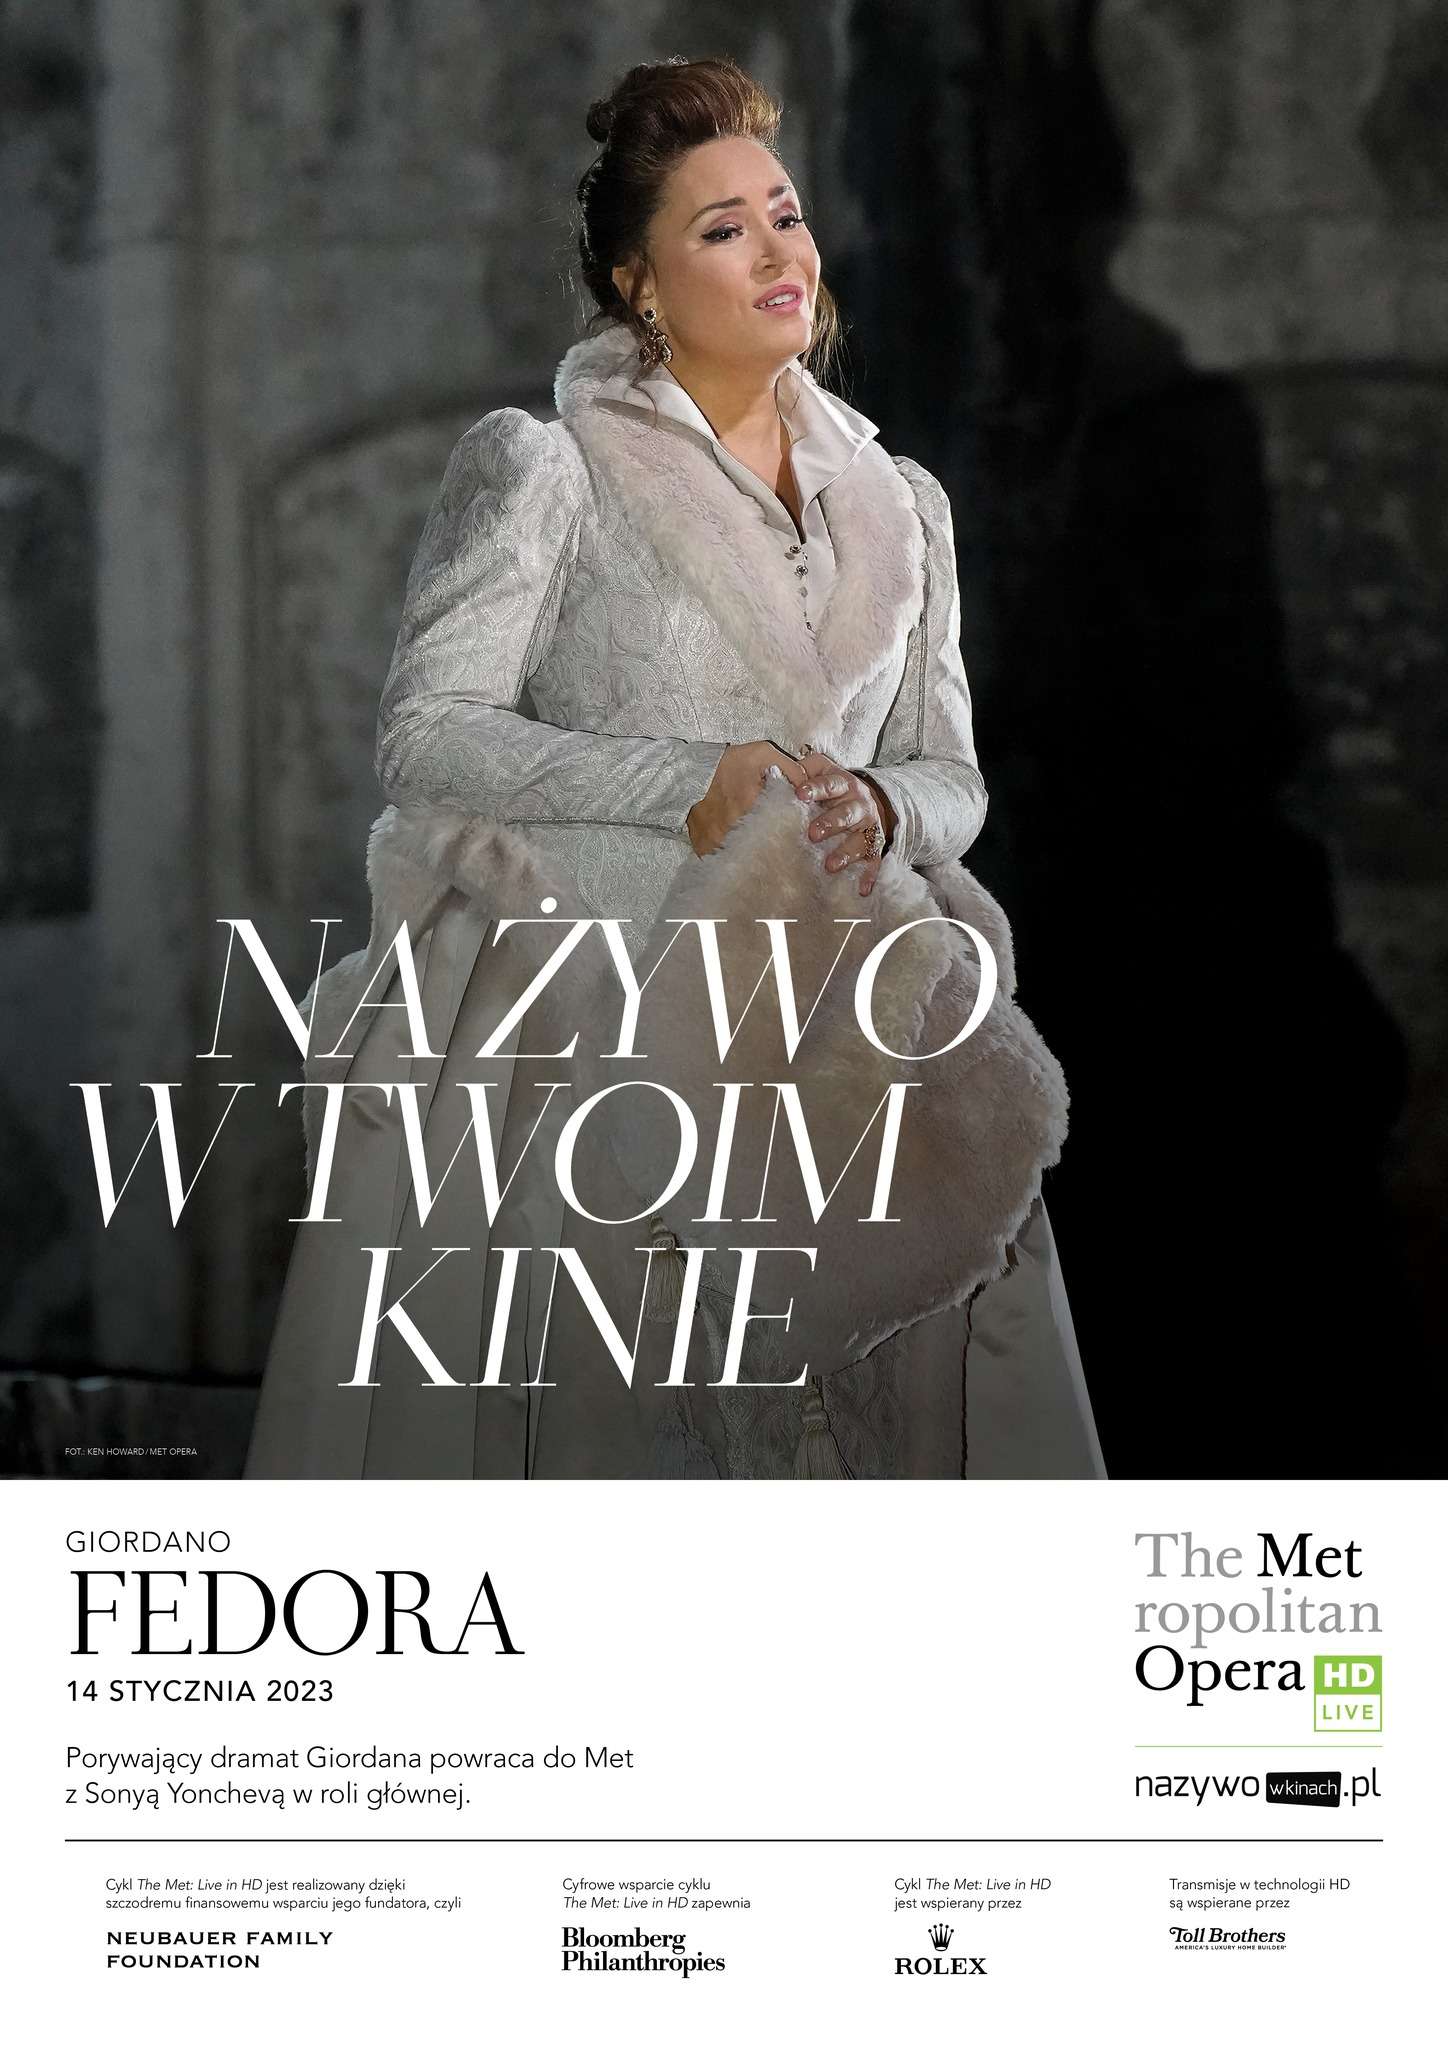 Met Opera returns to Światowid Cinema!